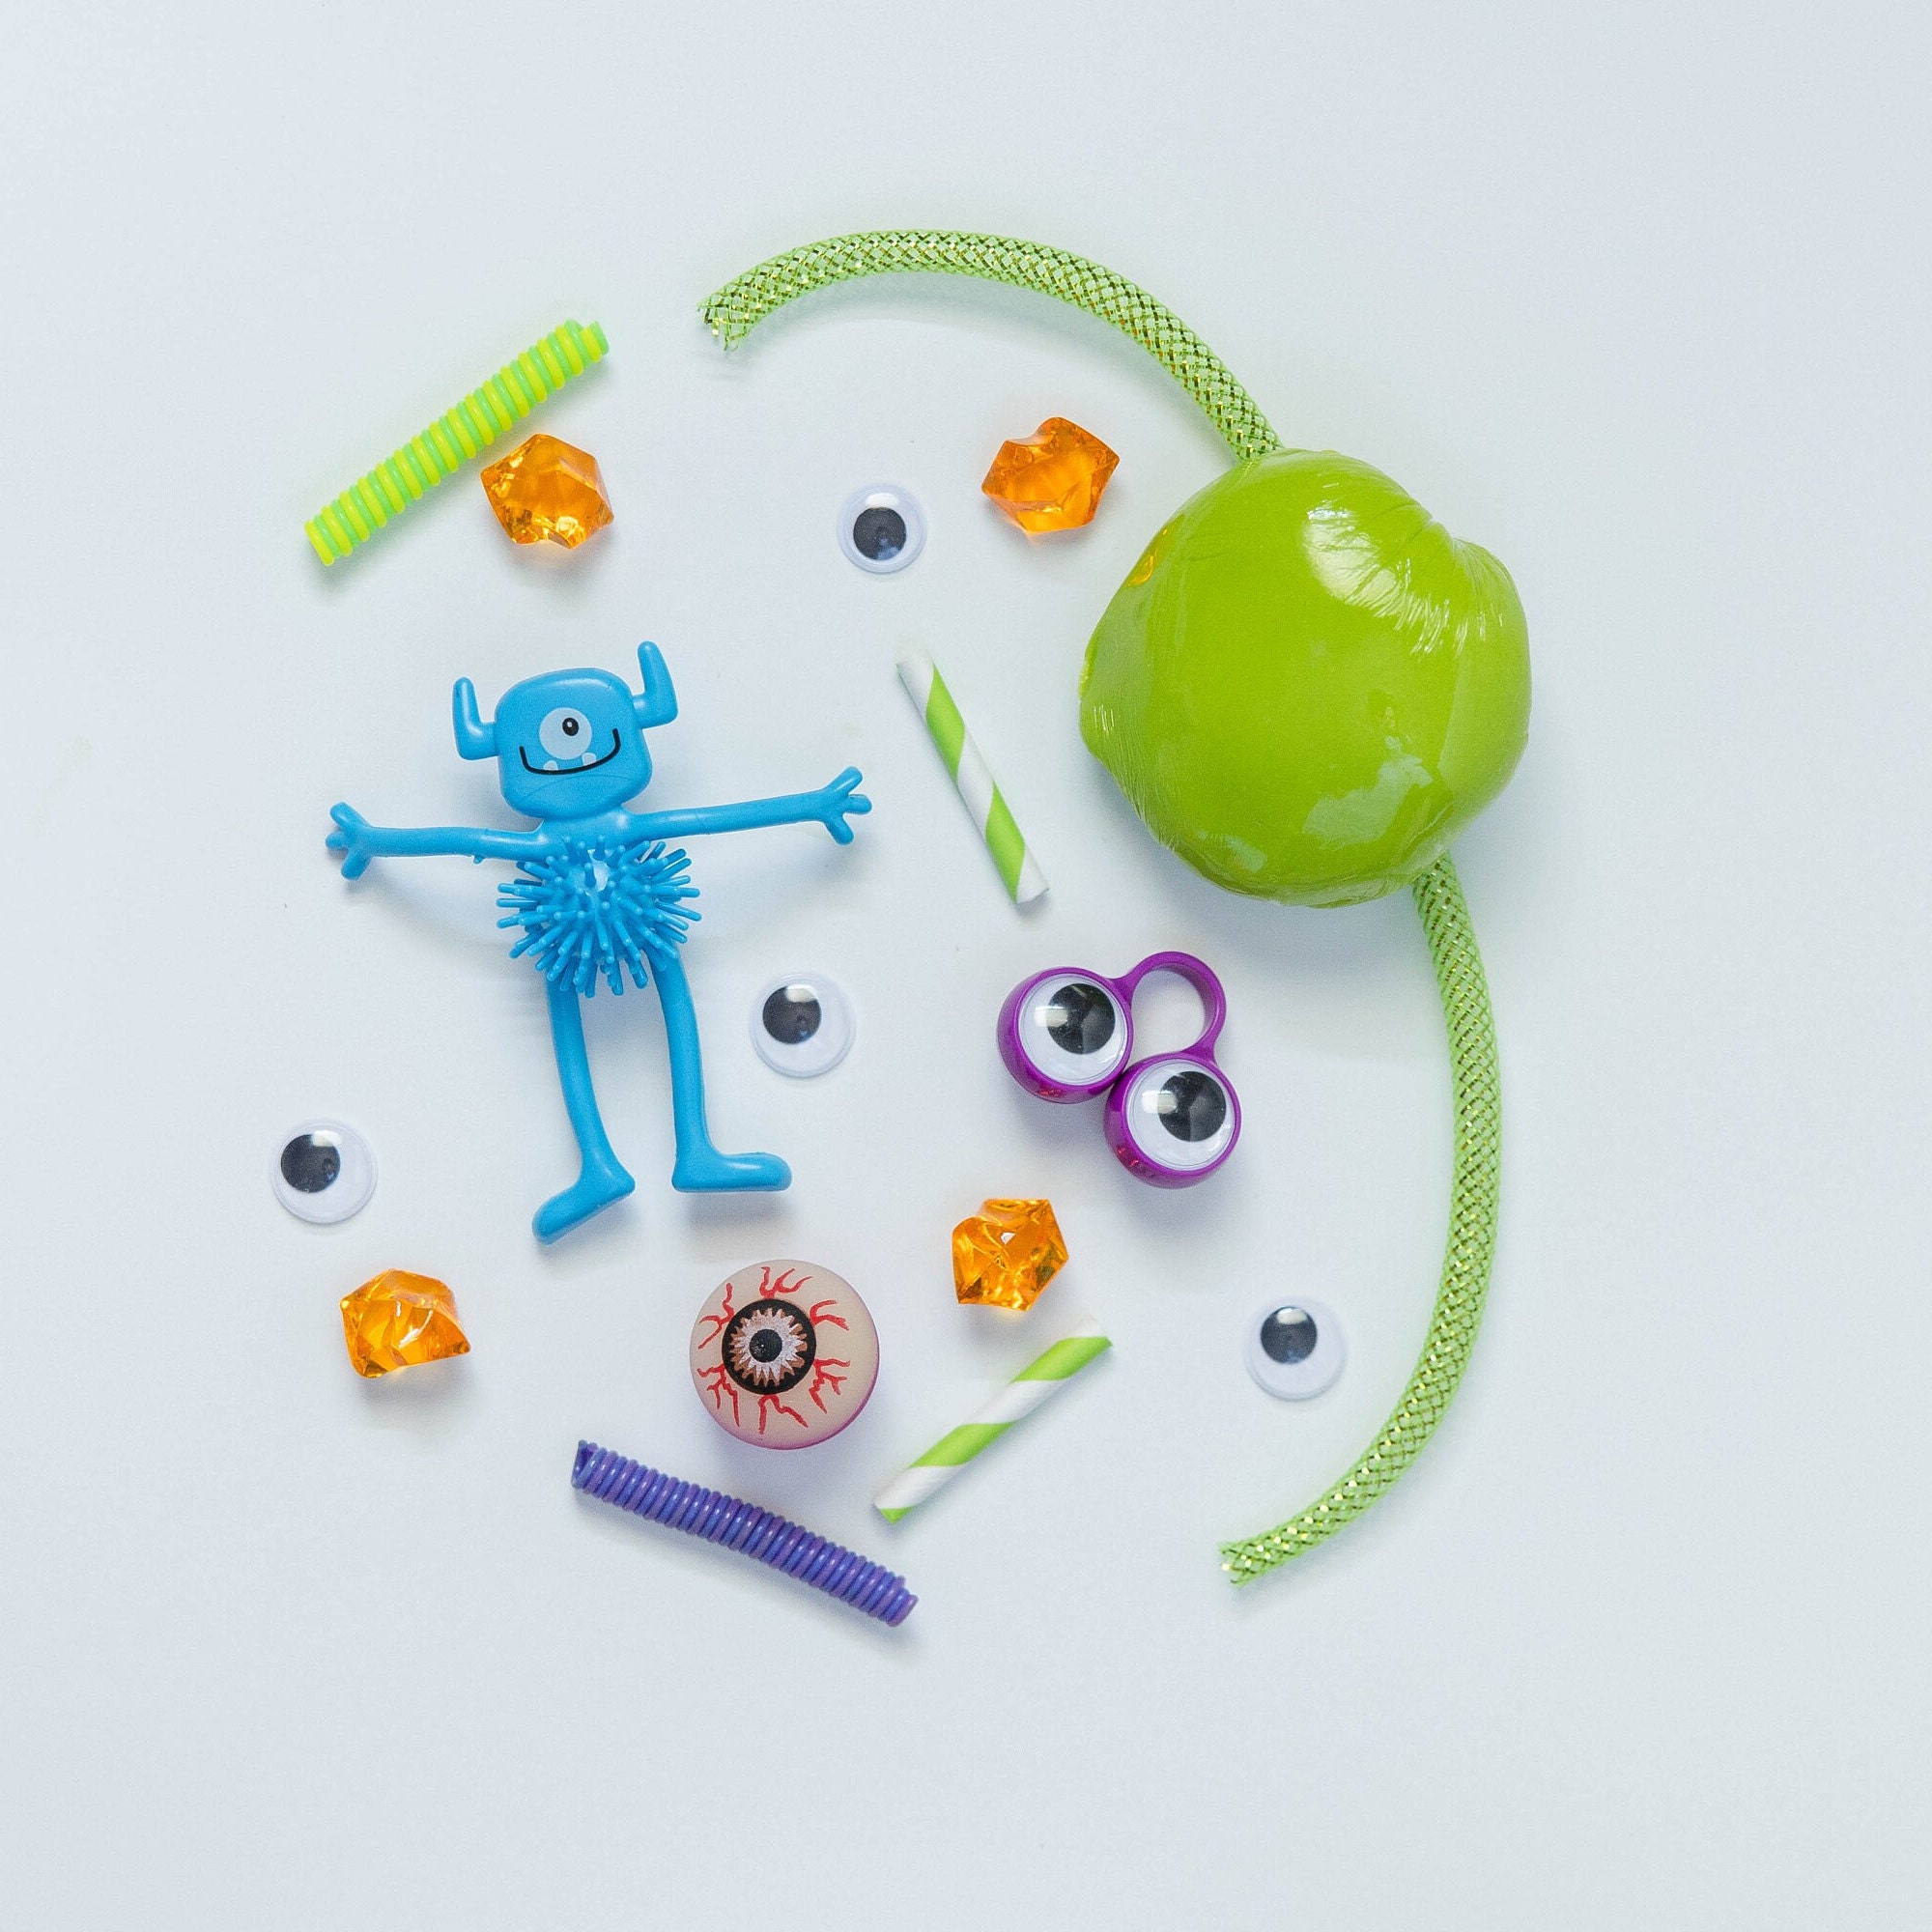 DIY Colorful Monster Play Dough Kit - Full Bloom CreativityFull